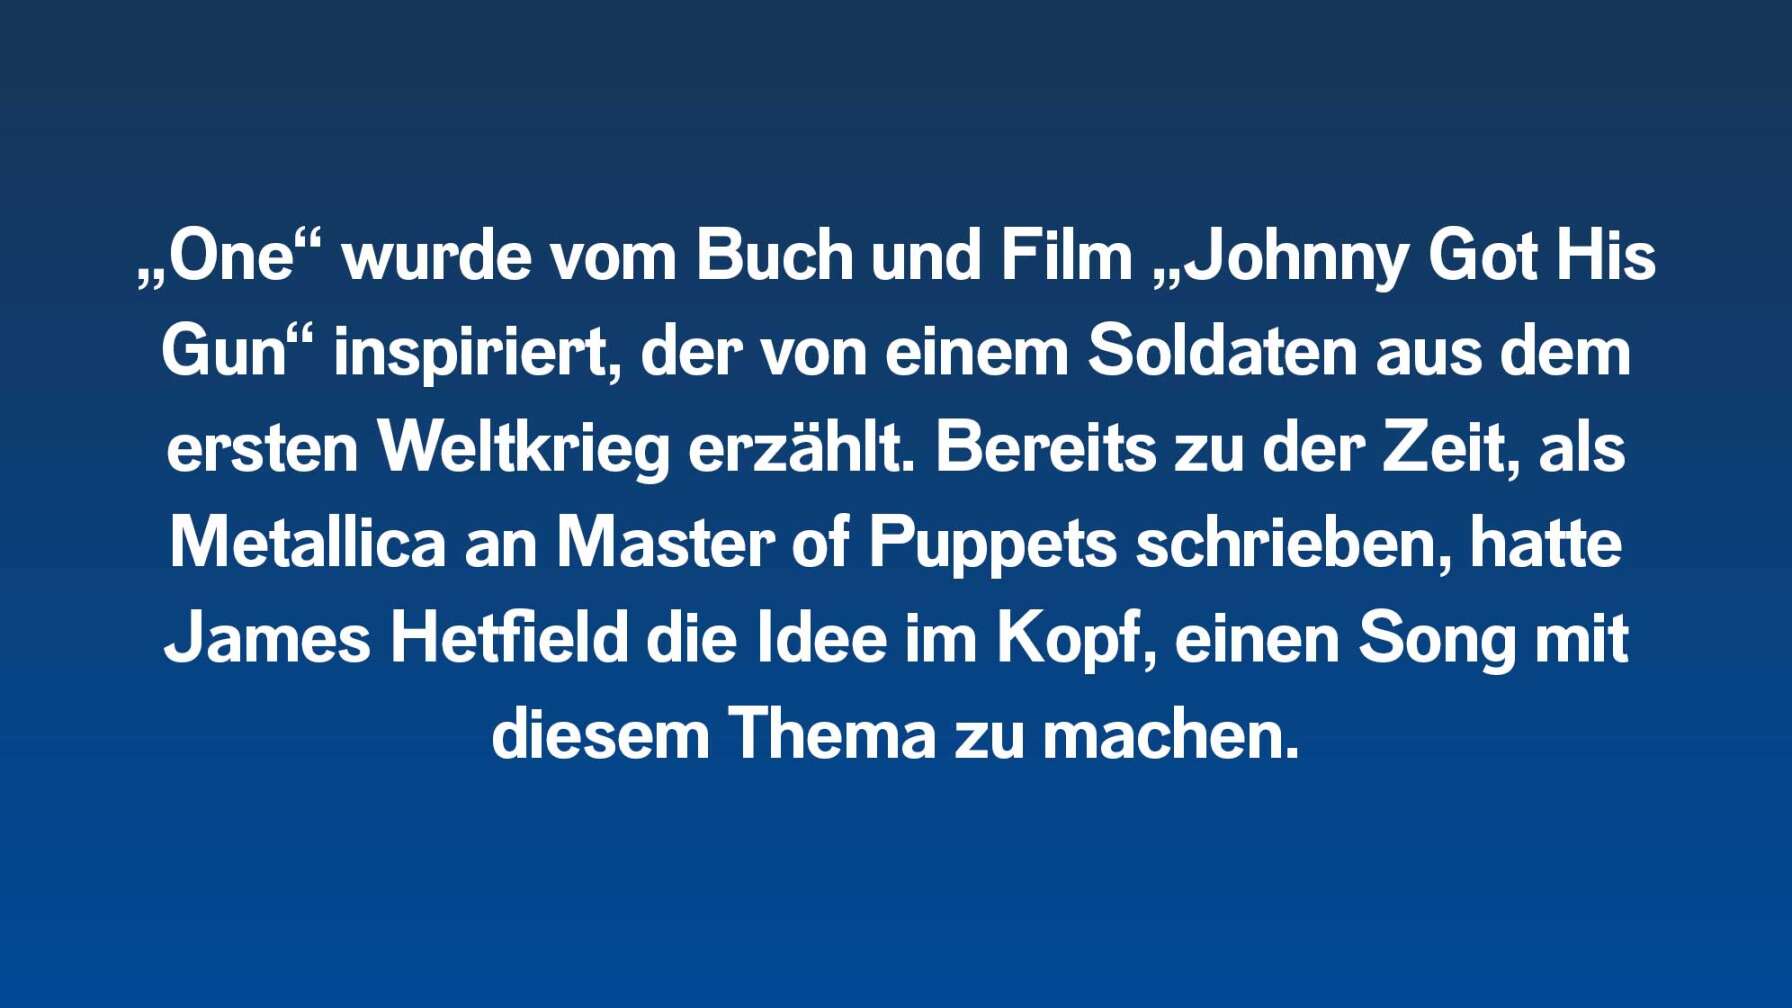 „One“ wurde vom Buch und Film „Johnny Got His Gun“ inspiriert, der von einem Soldaten aus dem ersten Weltkrieg erzählt. Bereits zu der Zeit, als Metallica an Master of Puppets schrieben, hatte James Hetfield eine Idee im Kopf einen Song mit diesem Thema zu machen.